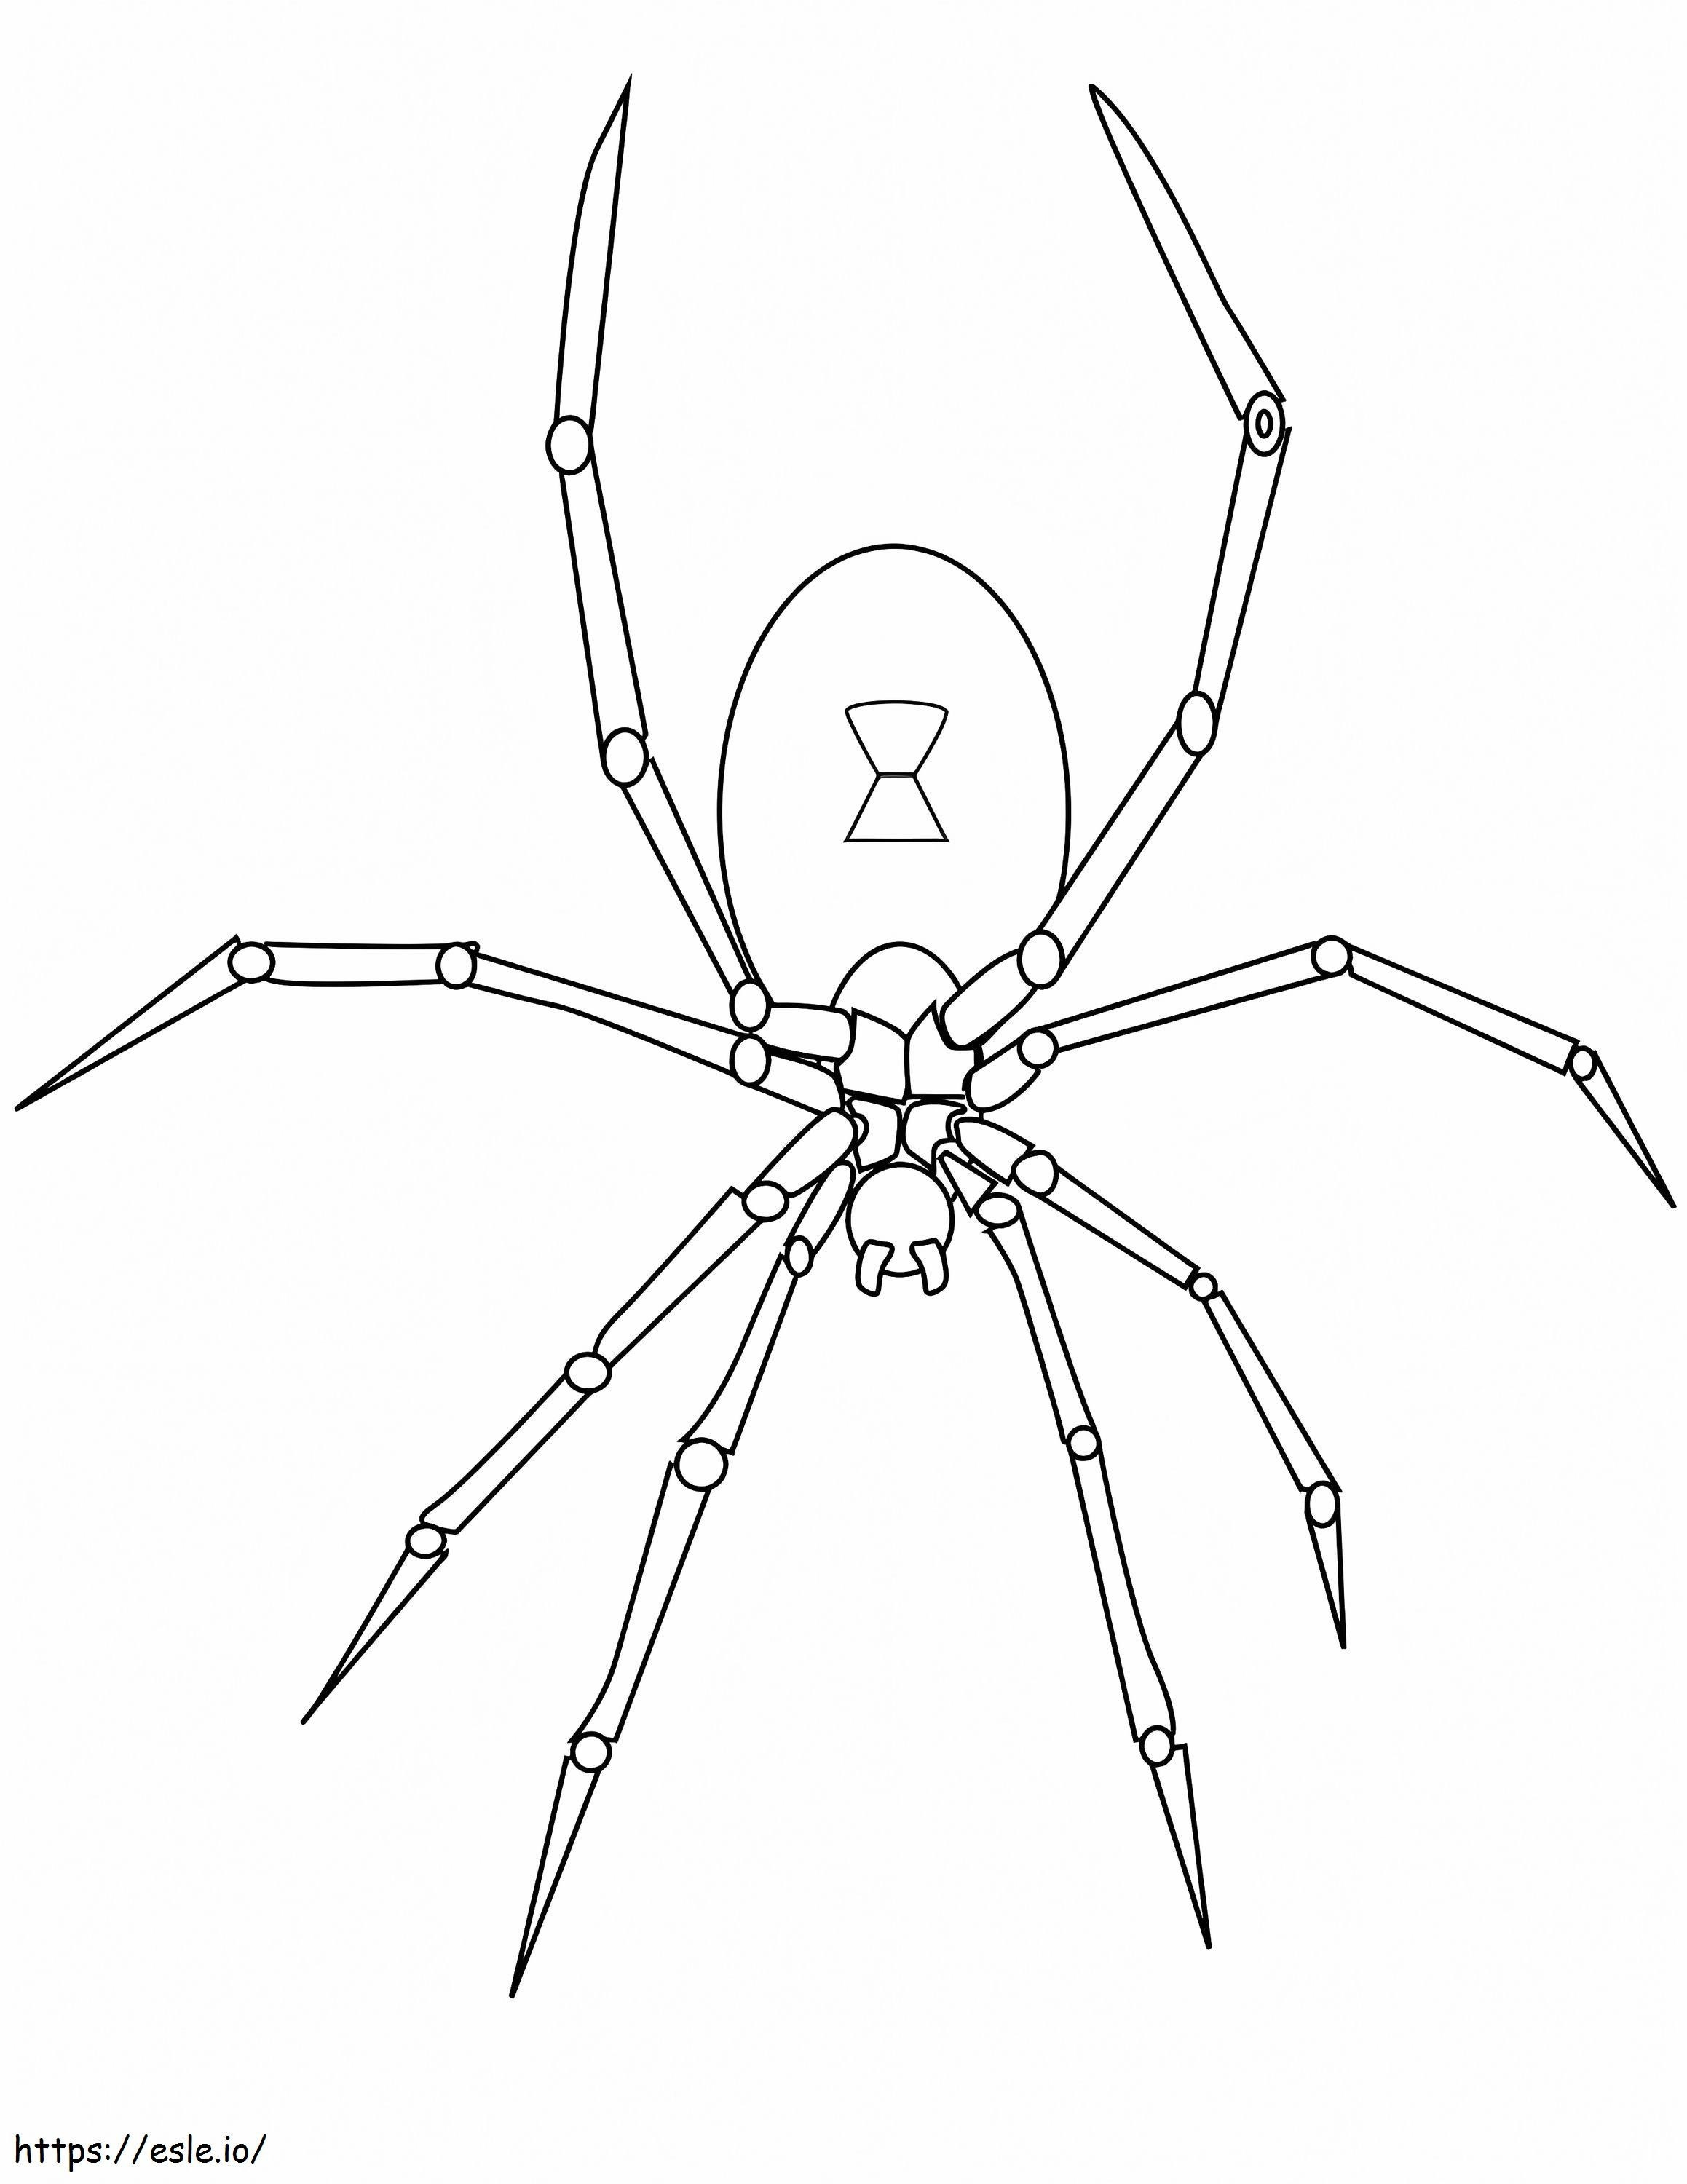 Coloriage Araignée normale à imprimer dessin